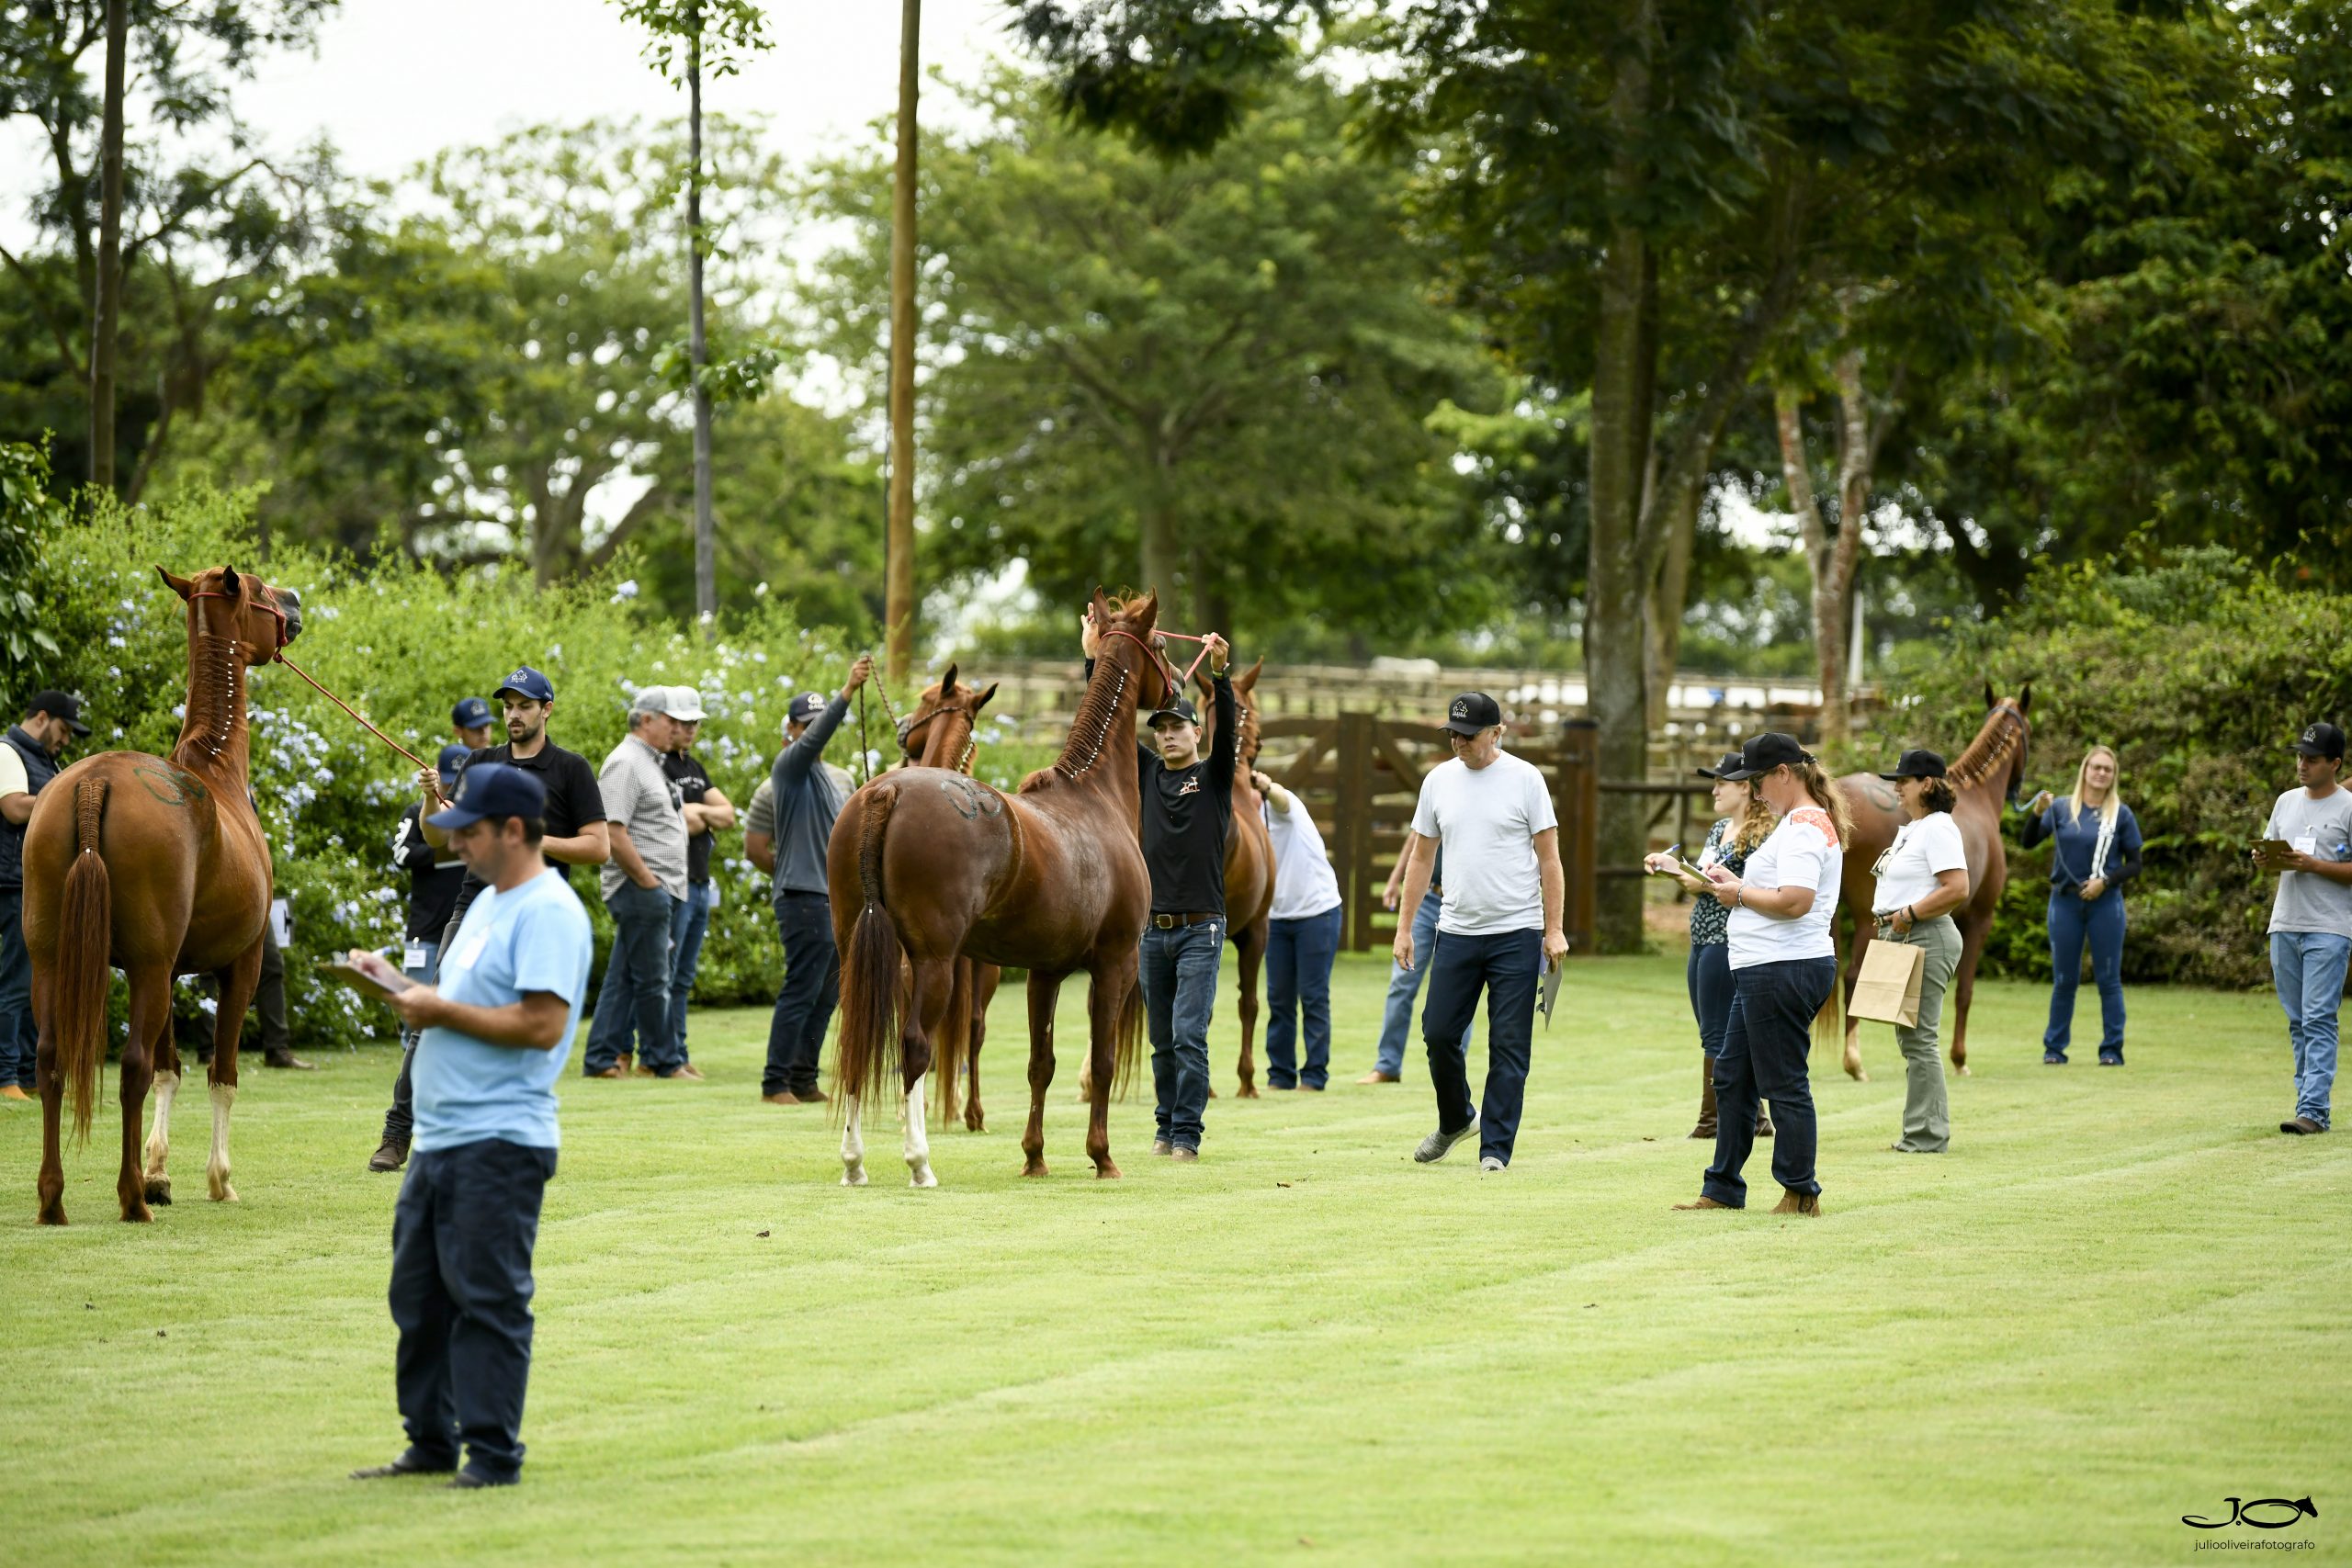 Primeiro curso 'Cavalo Mangalarga na Prática Criação e seleção' aconteceu em Itapetininga (SP)